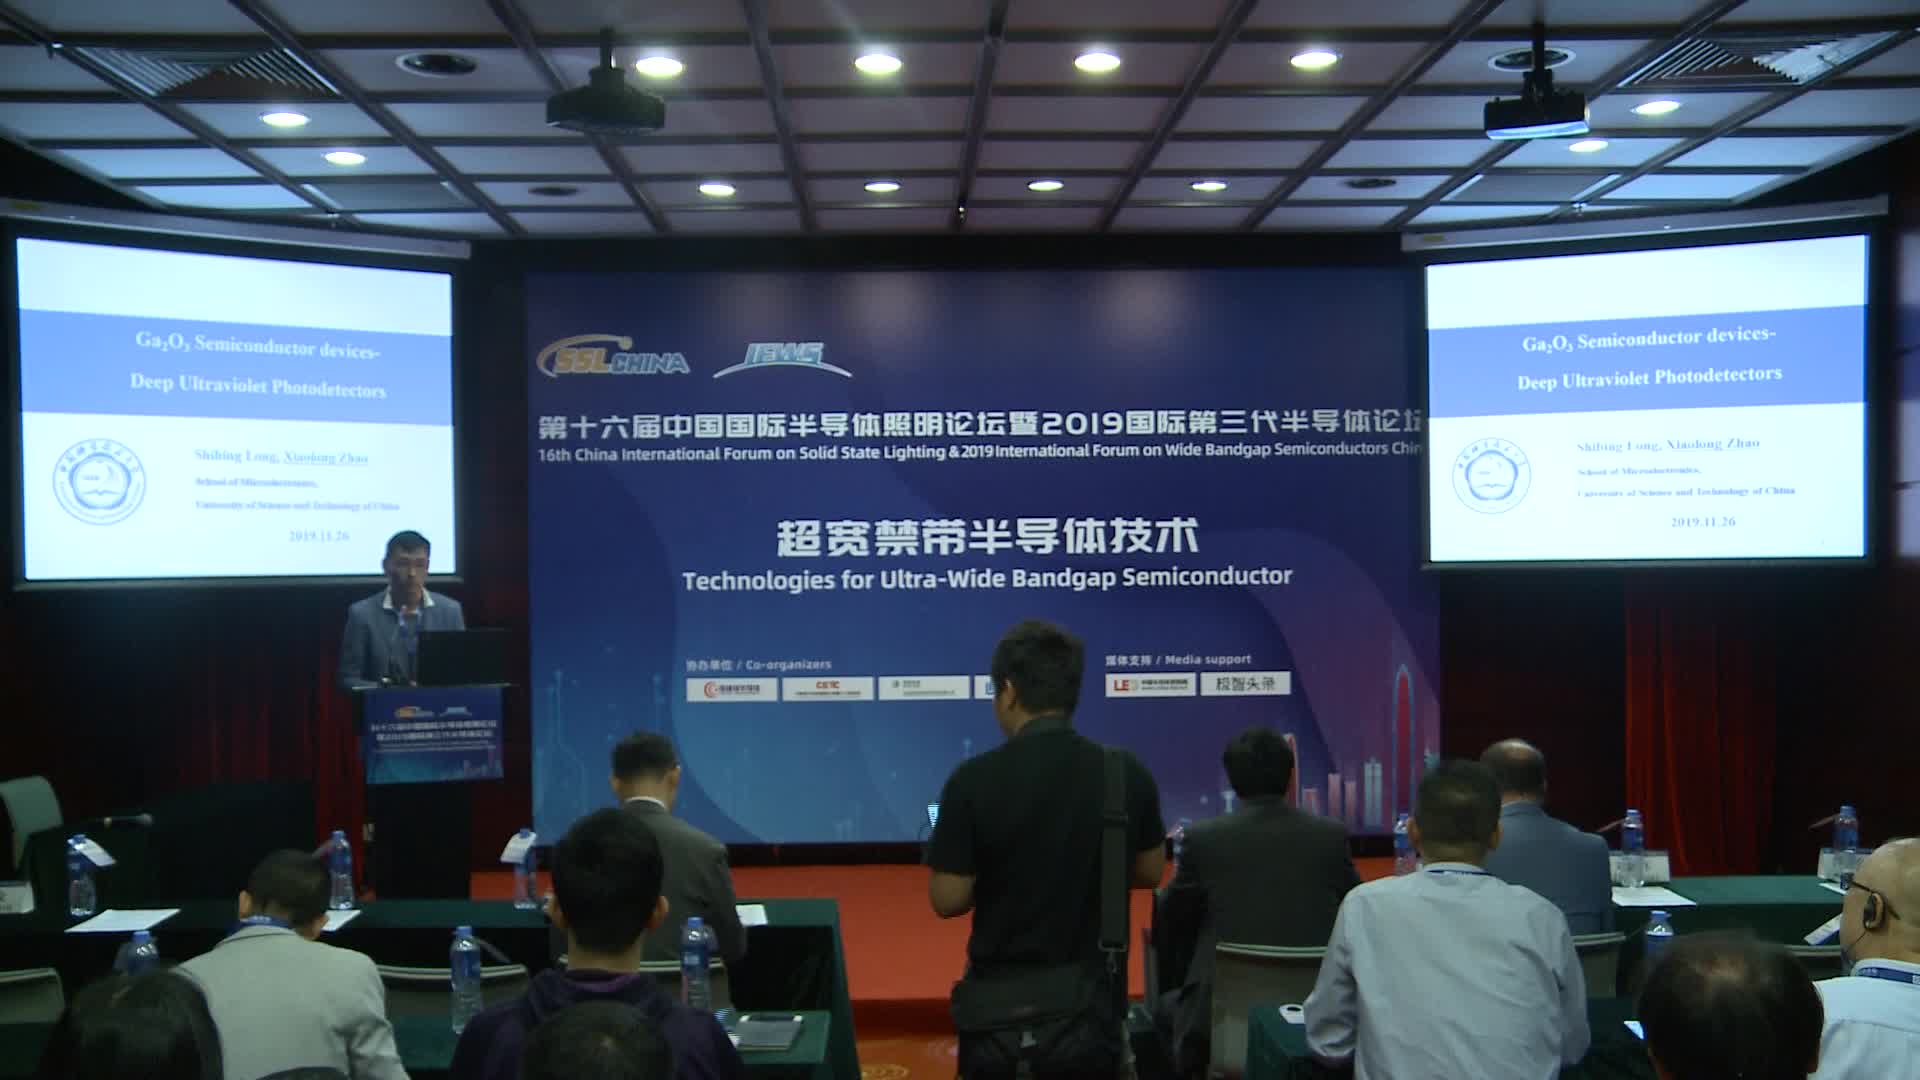 【极智课堂】中国科学技术大学赵晓龙：Ga2O3半导体器件-深紫外光电探测器